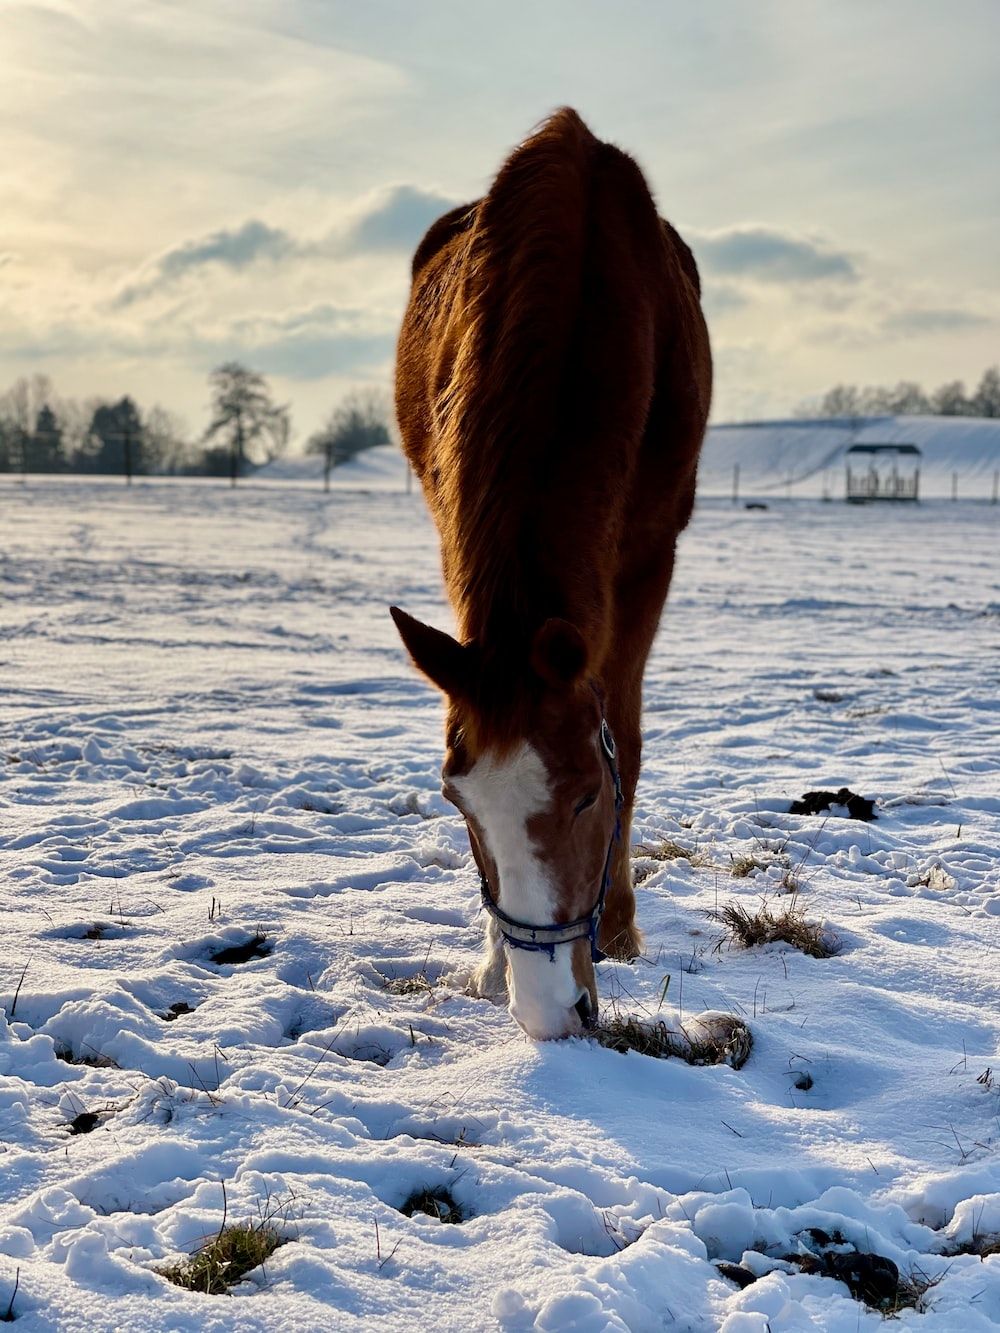  Pferde Im Schnee Hintergrundbild 1000x1333. Foto zum Thema Braunes Pferd tagsüber auf schneebedecktem Boden